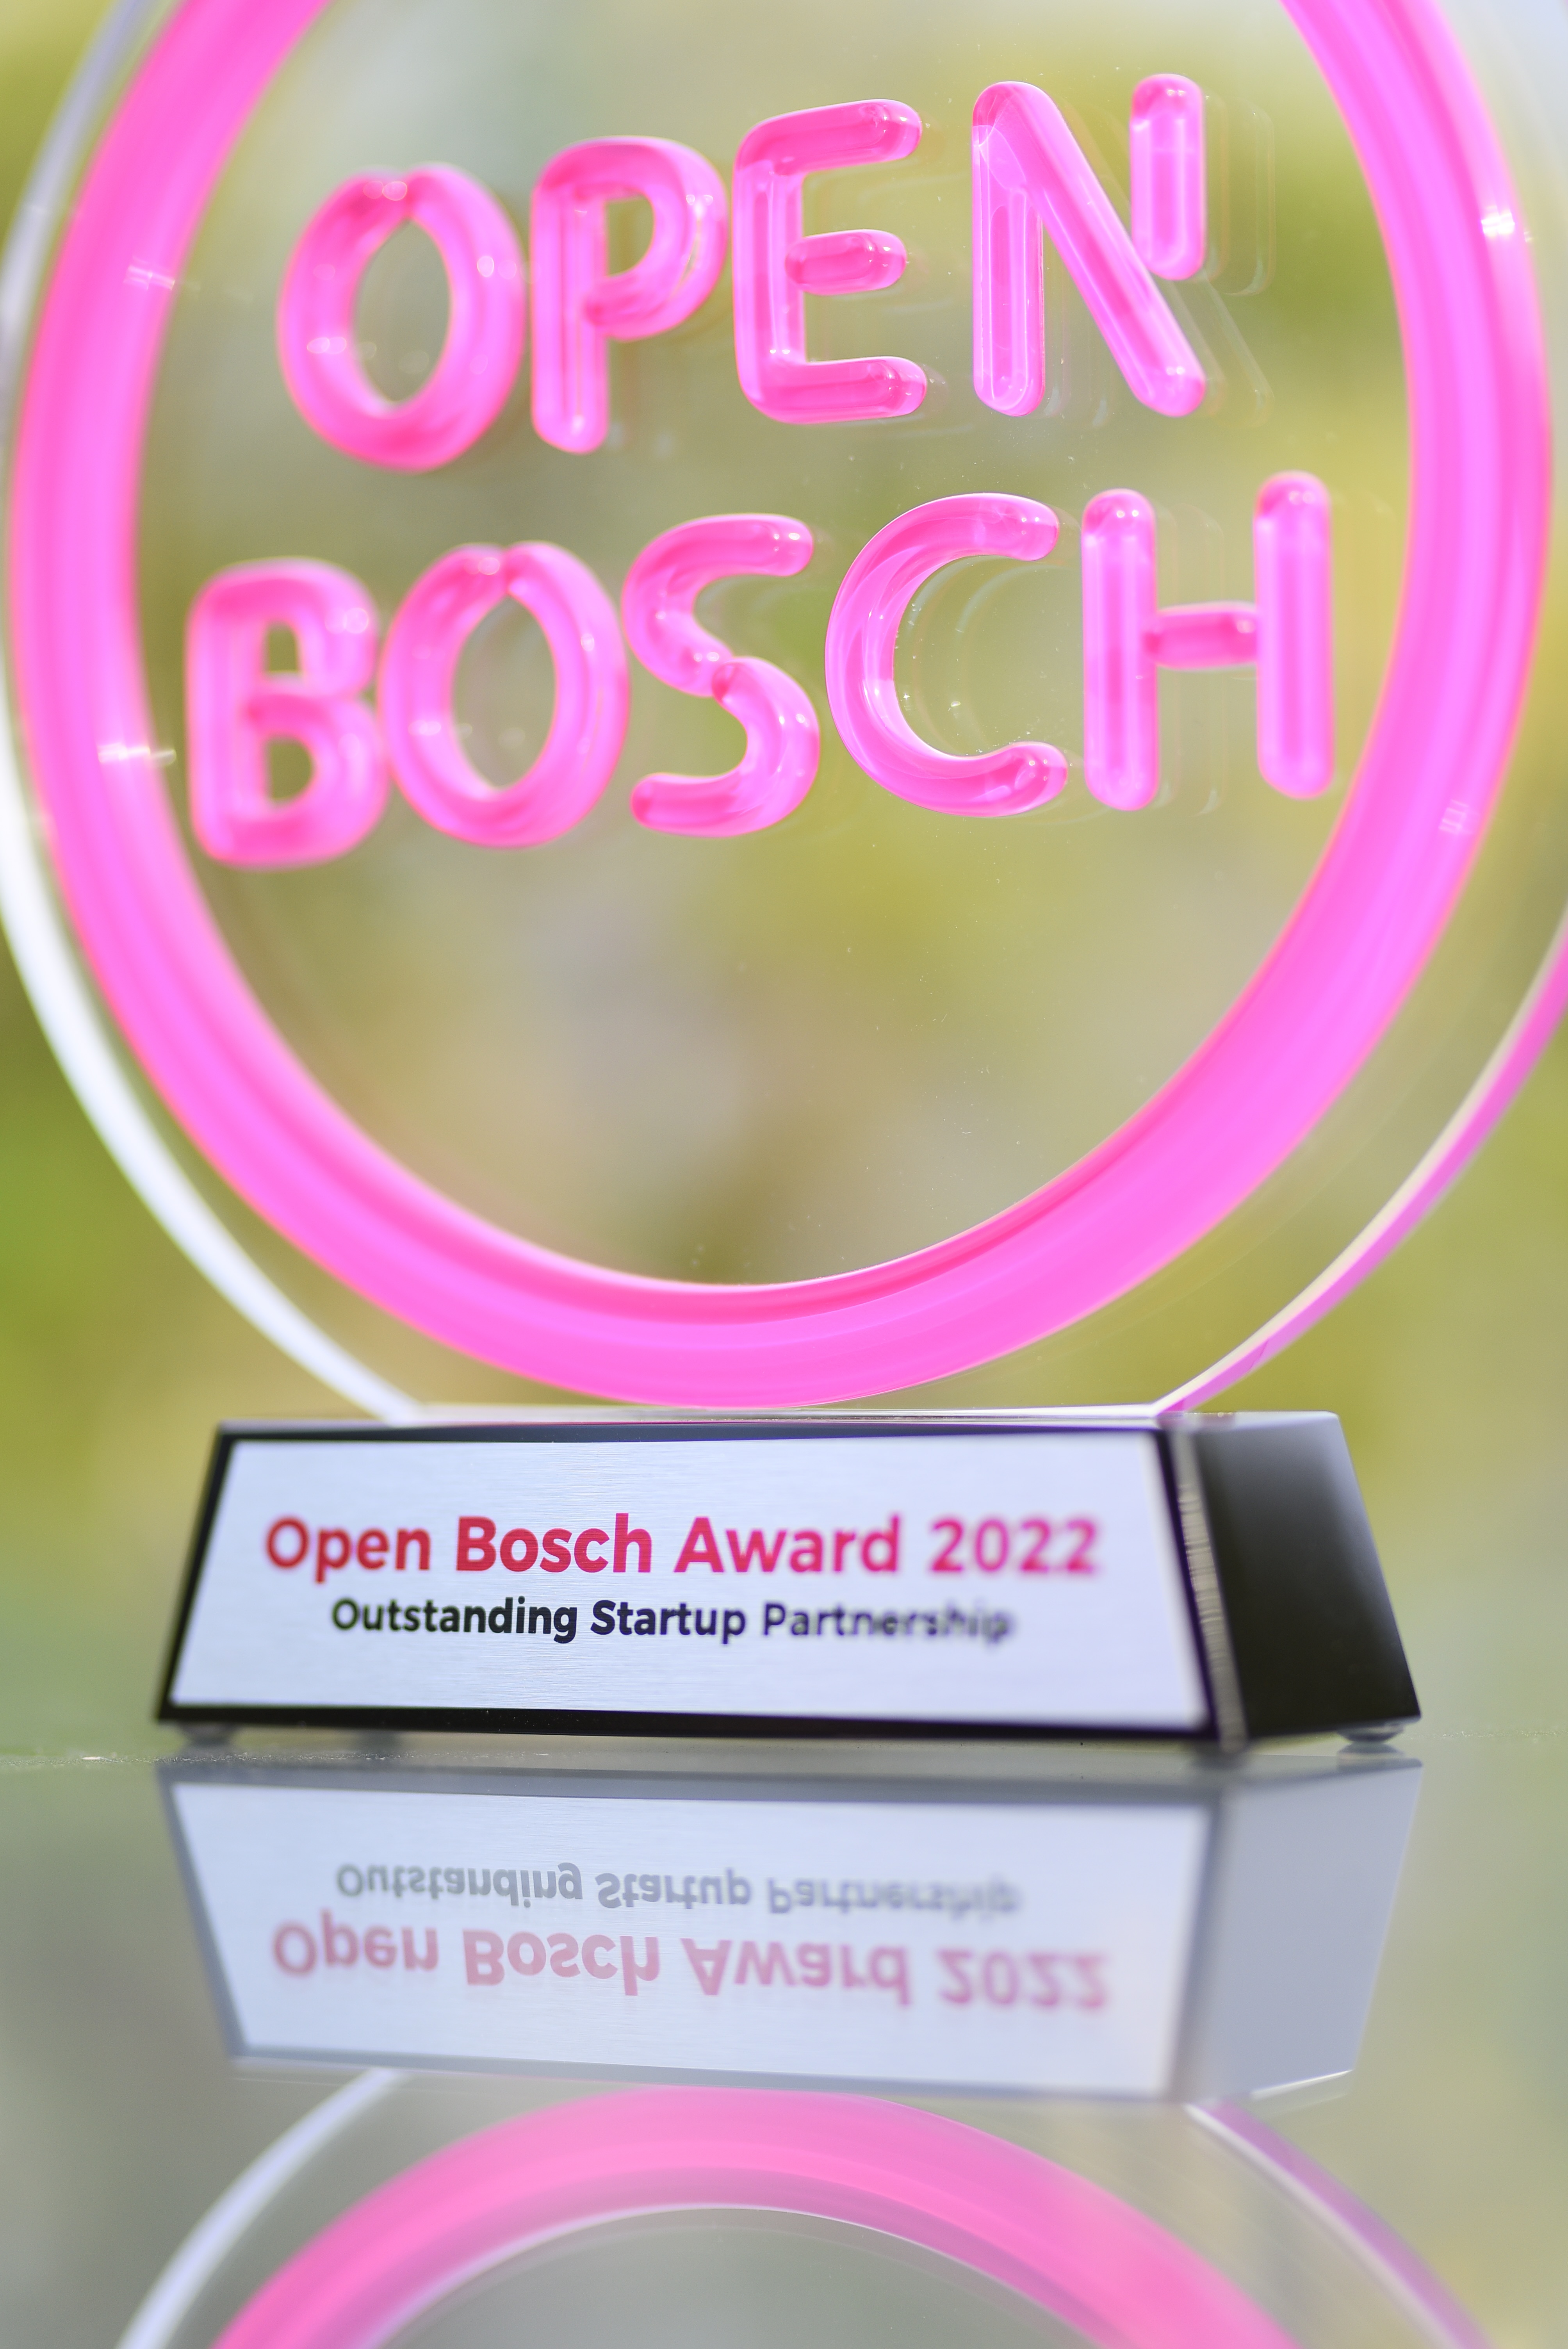 Open Bosch Award 2022